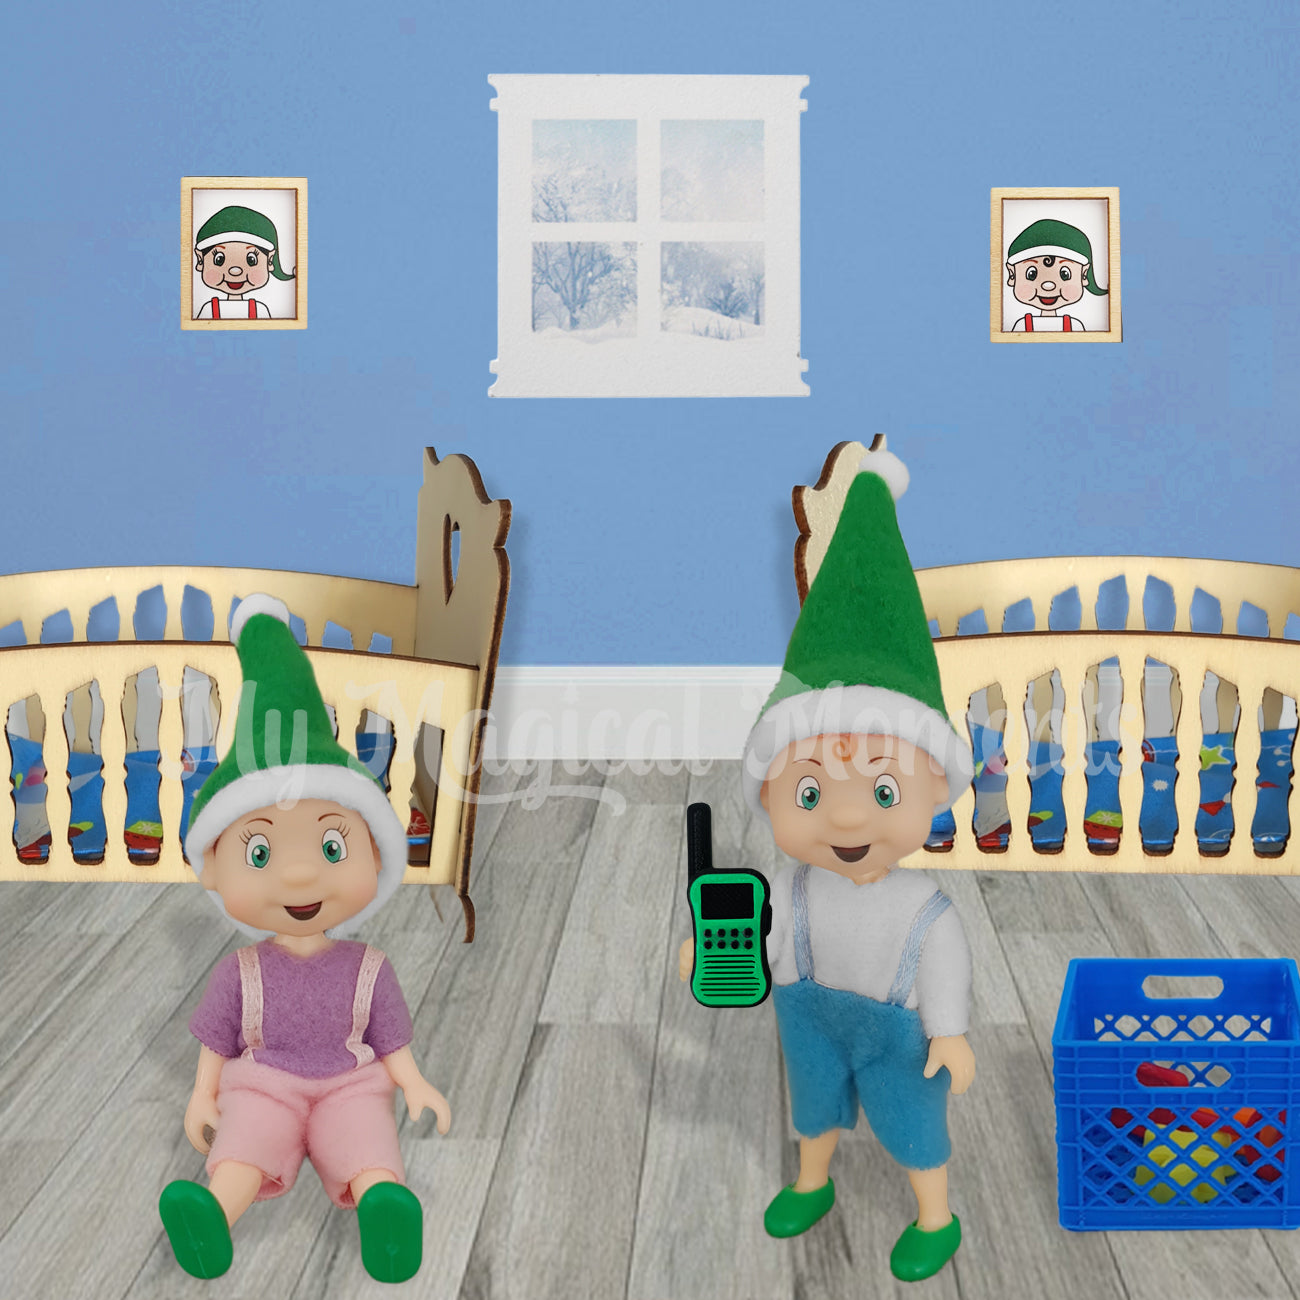 Elf toddlers playing with walkie talkies in their nursery